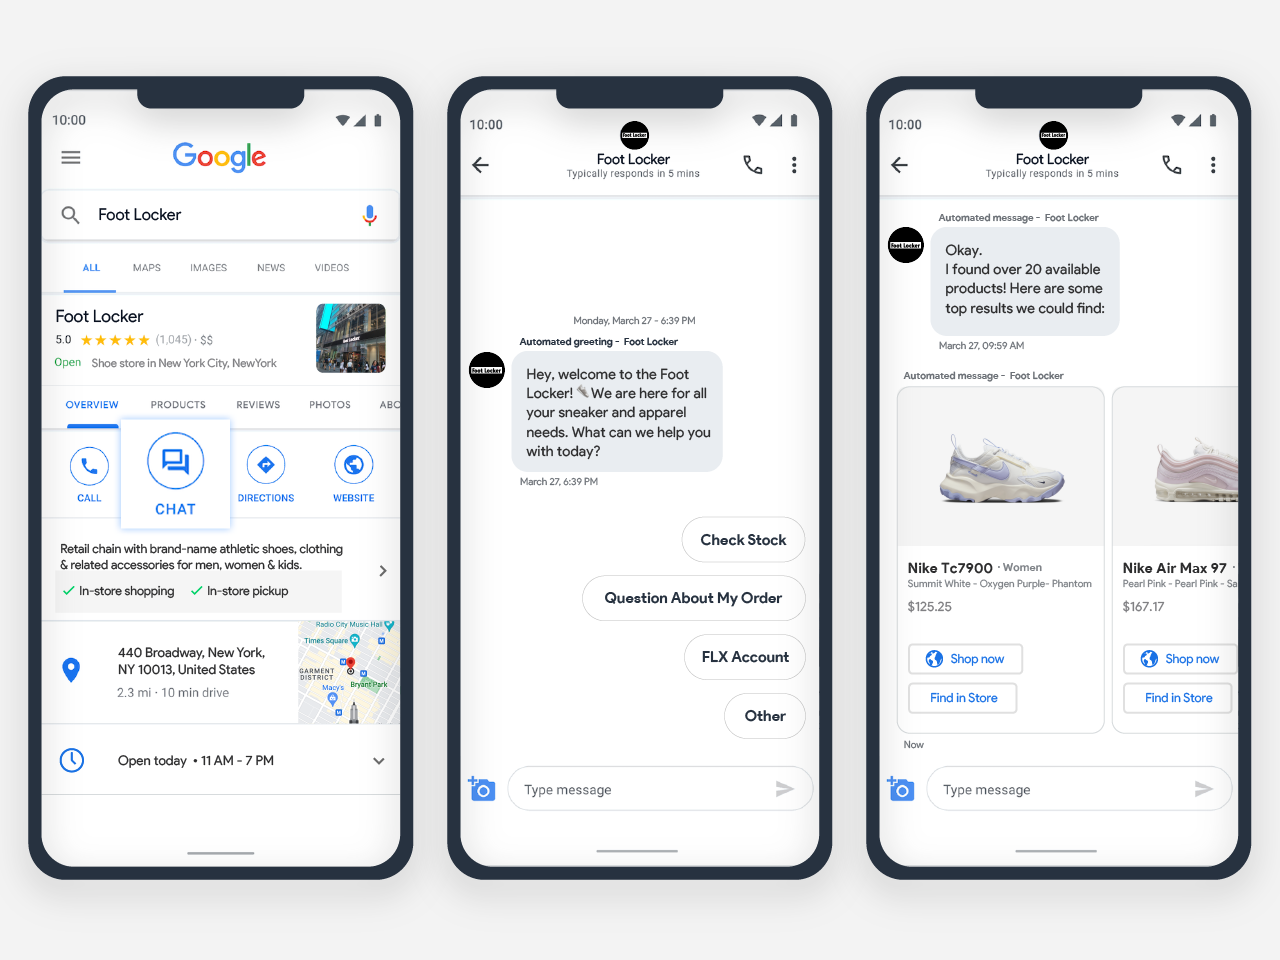 Foot Locker: Google's Business Messages